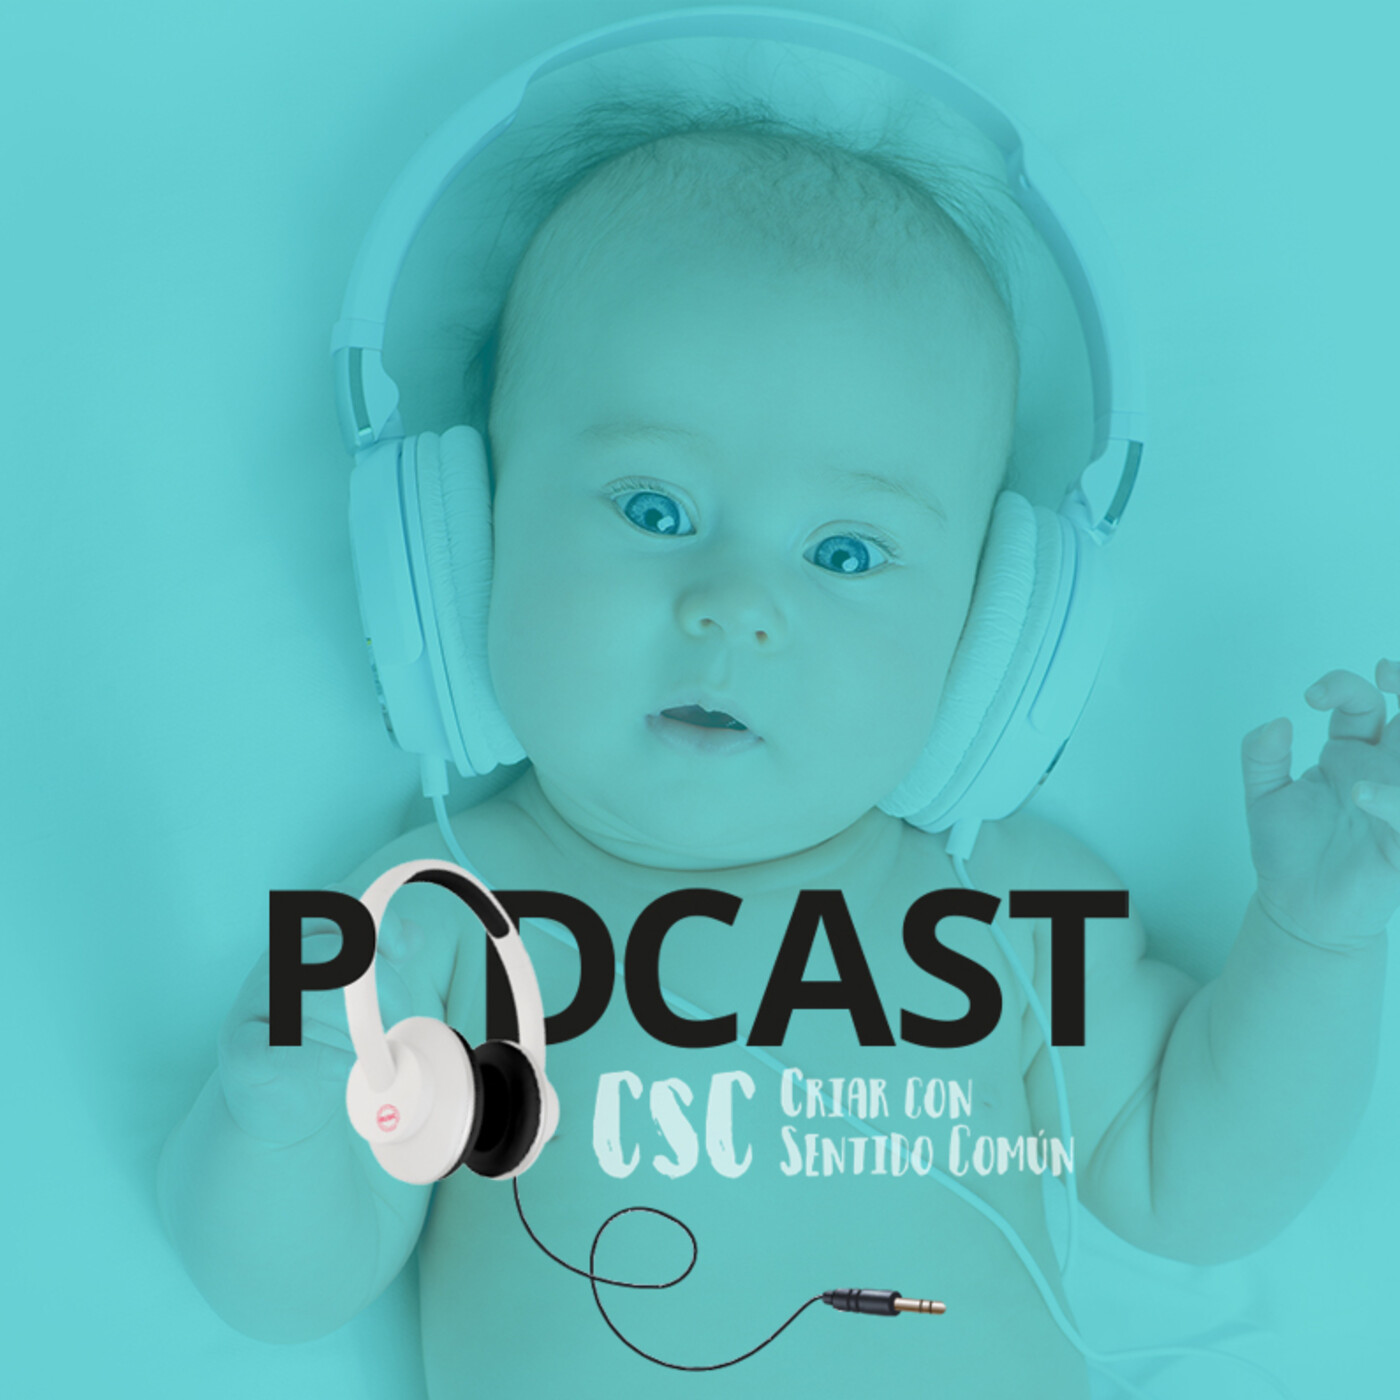 14. Llega el verano - Podcast CSC - 15 de junio de 2021